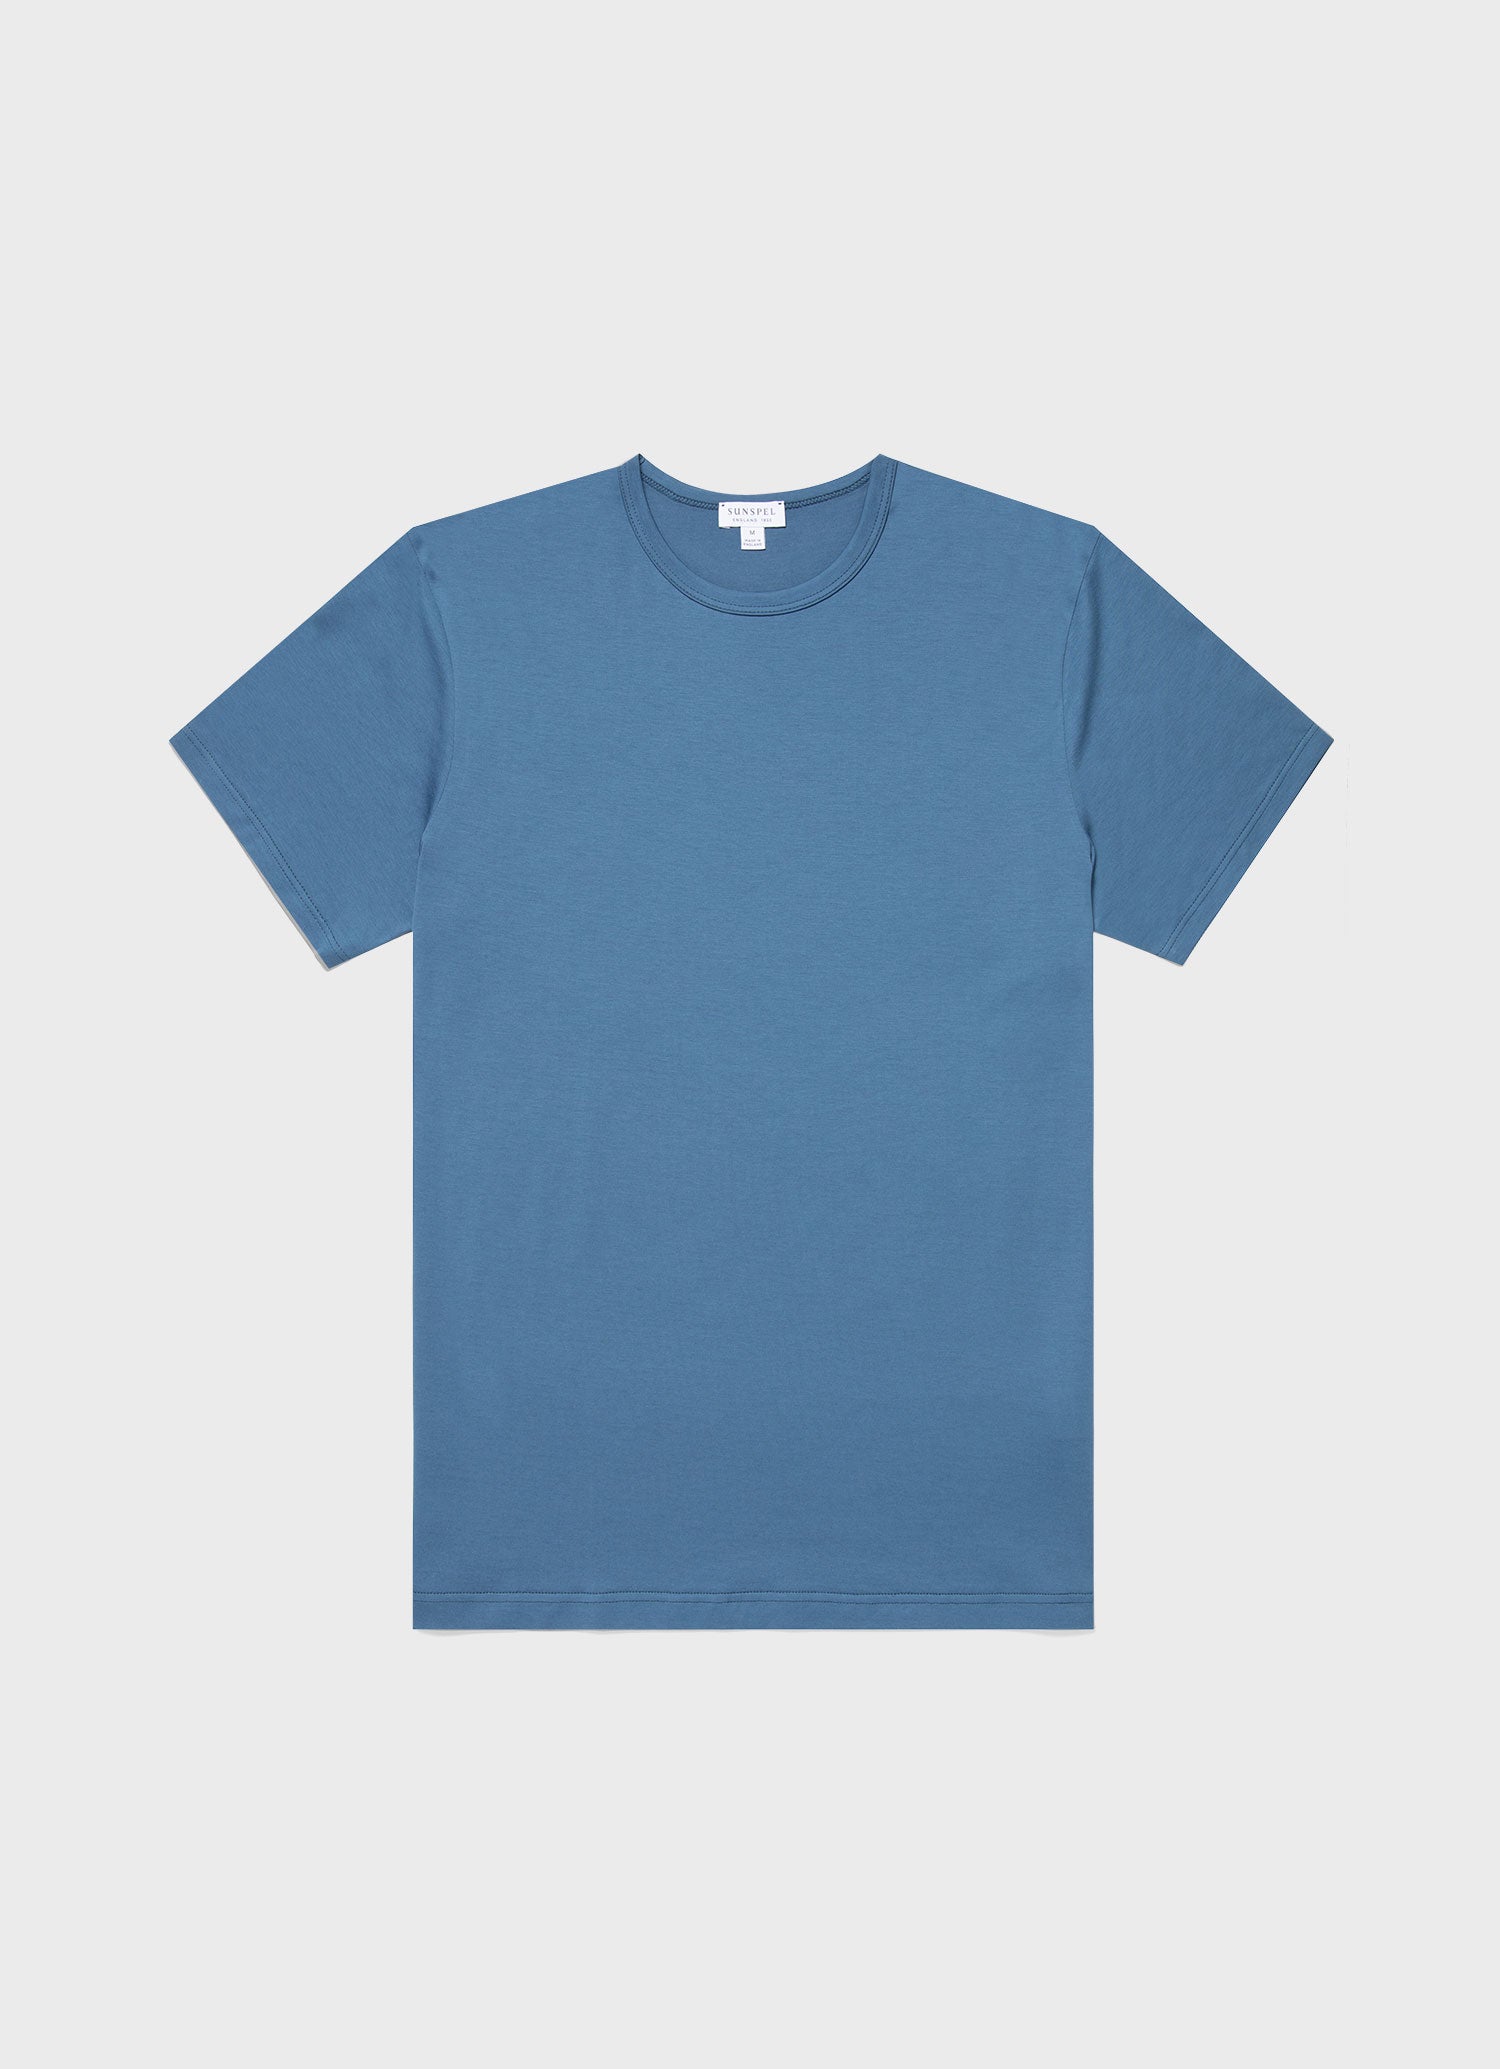 Men's Classic T-shirt in Steel Blue | Sunspel